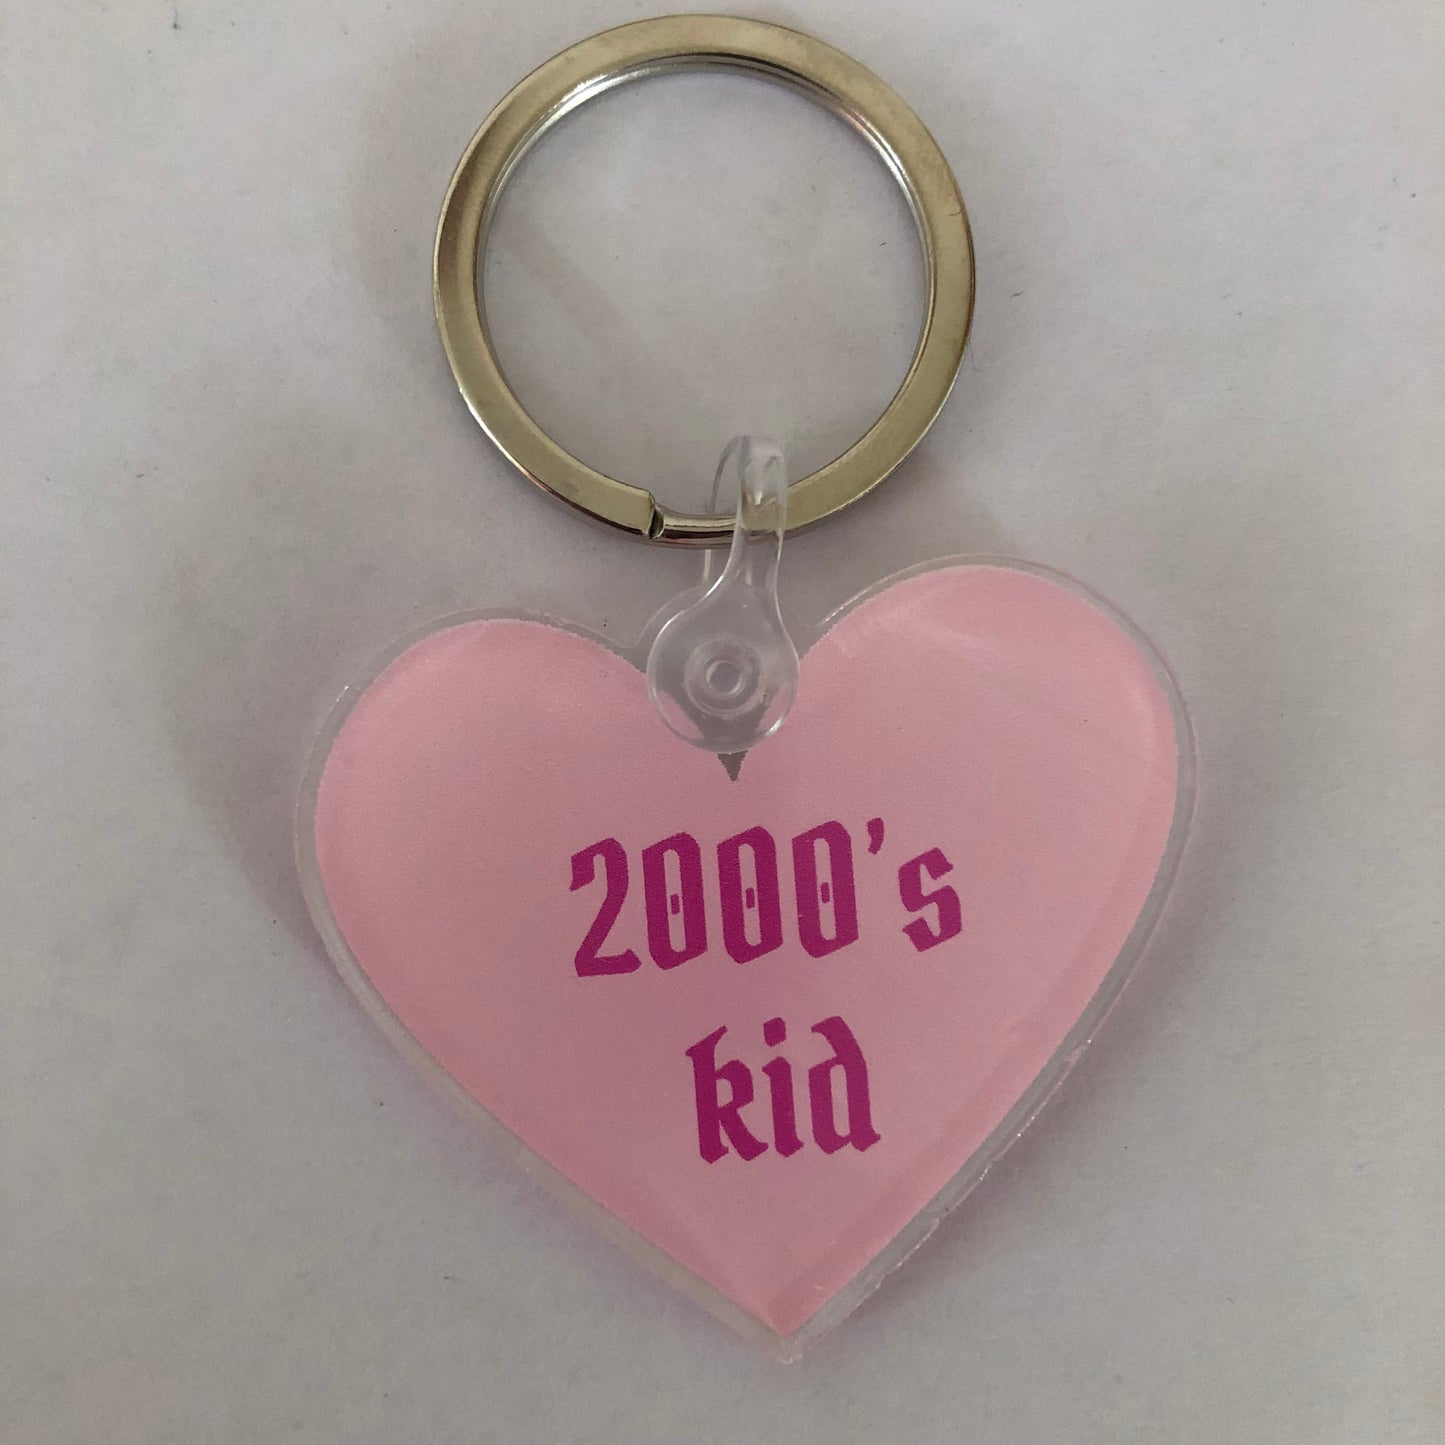 2000’s kid y2k keychain